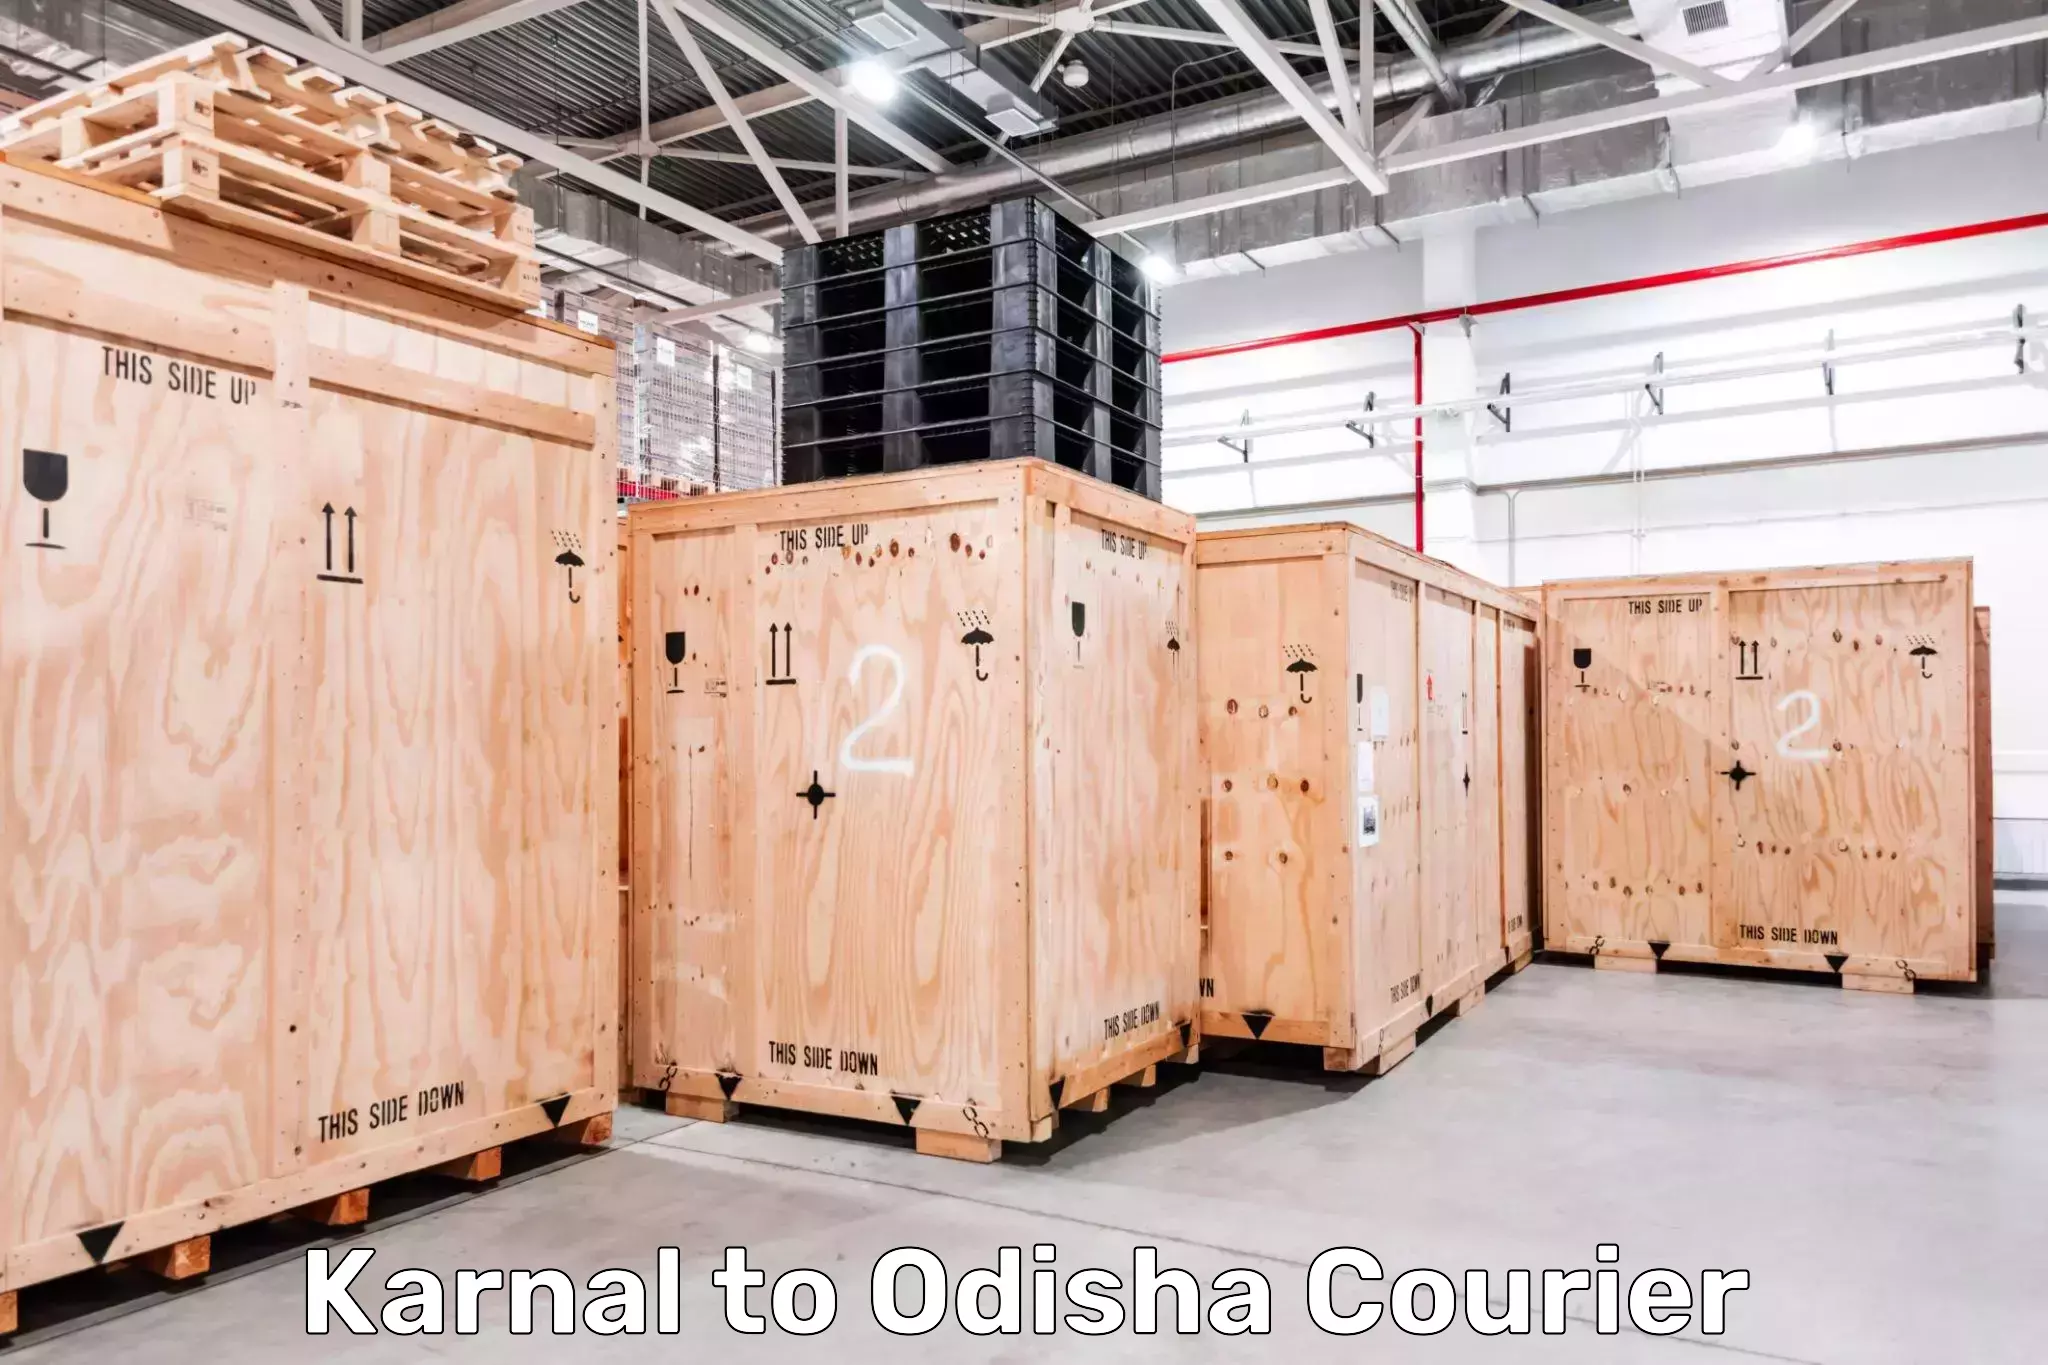 Weekend courier service Karnal to Odisha